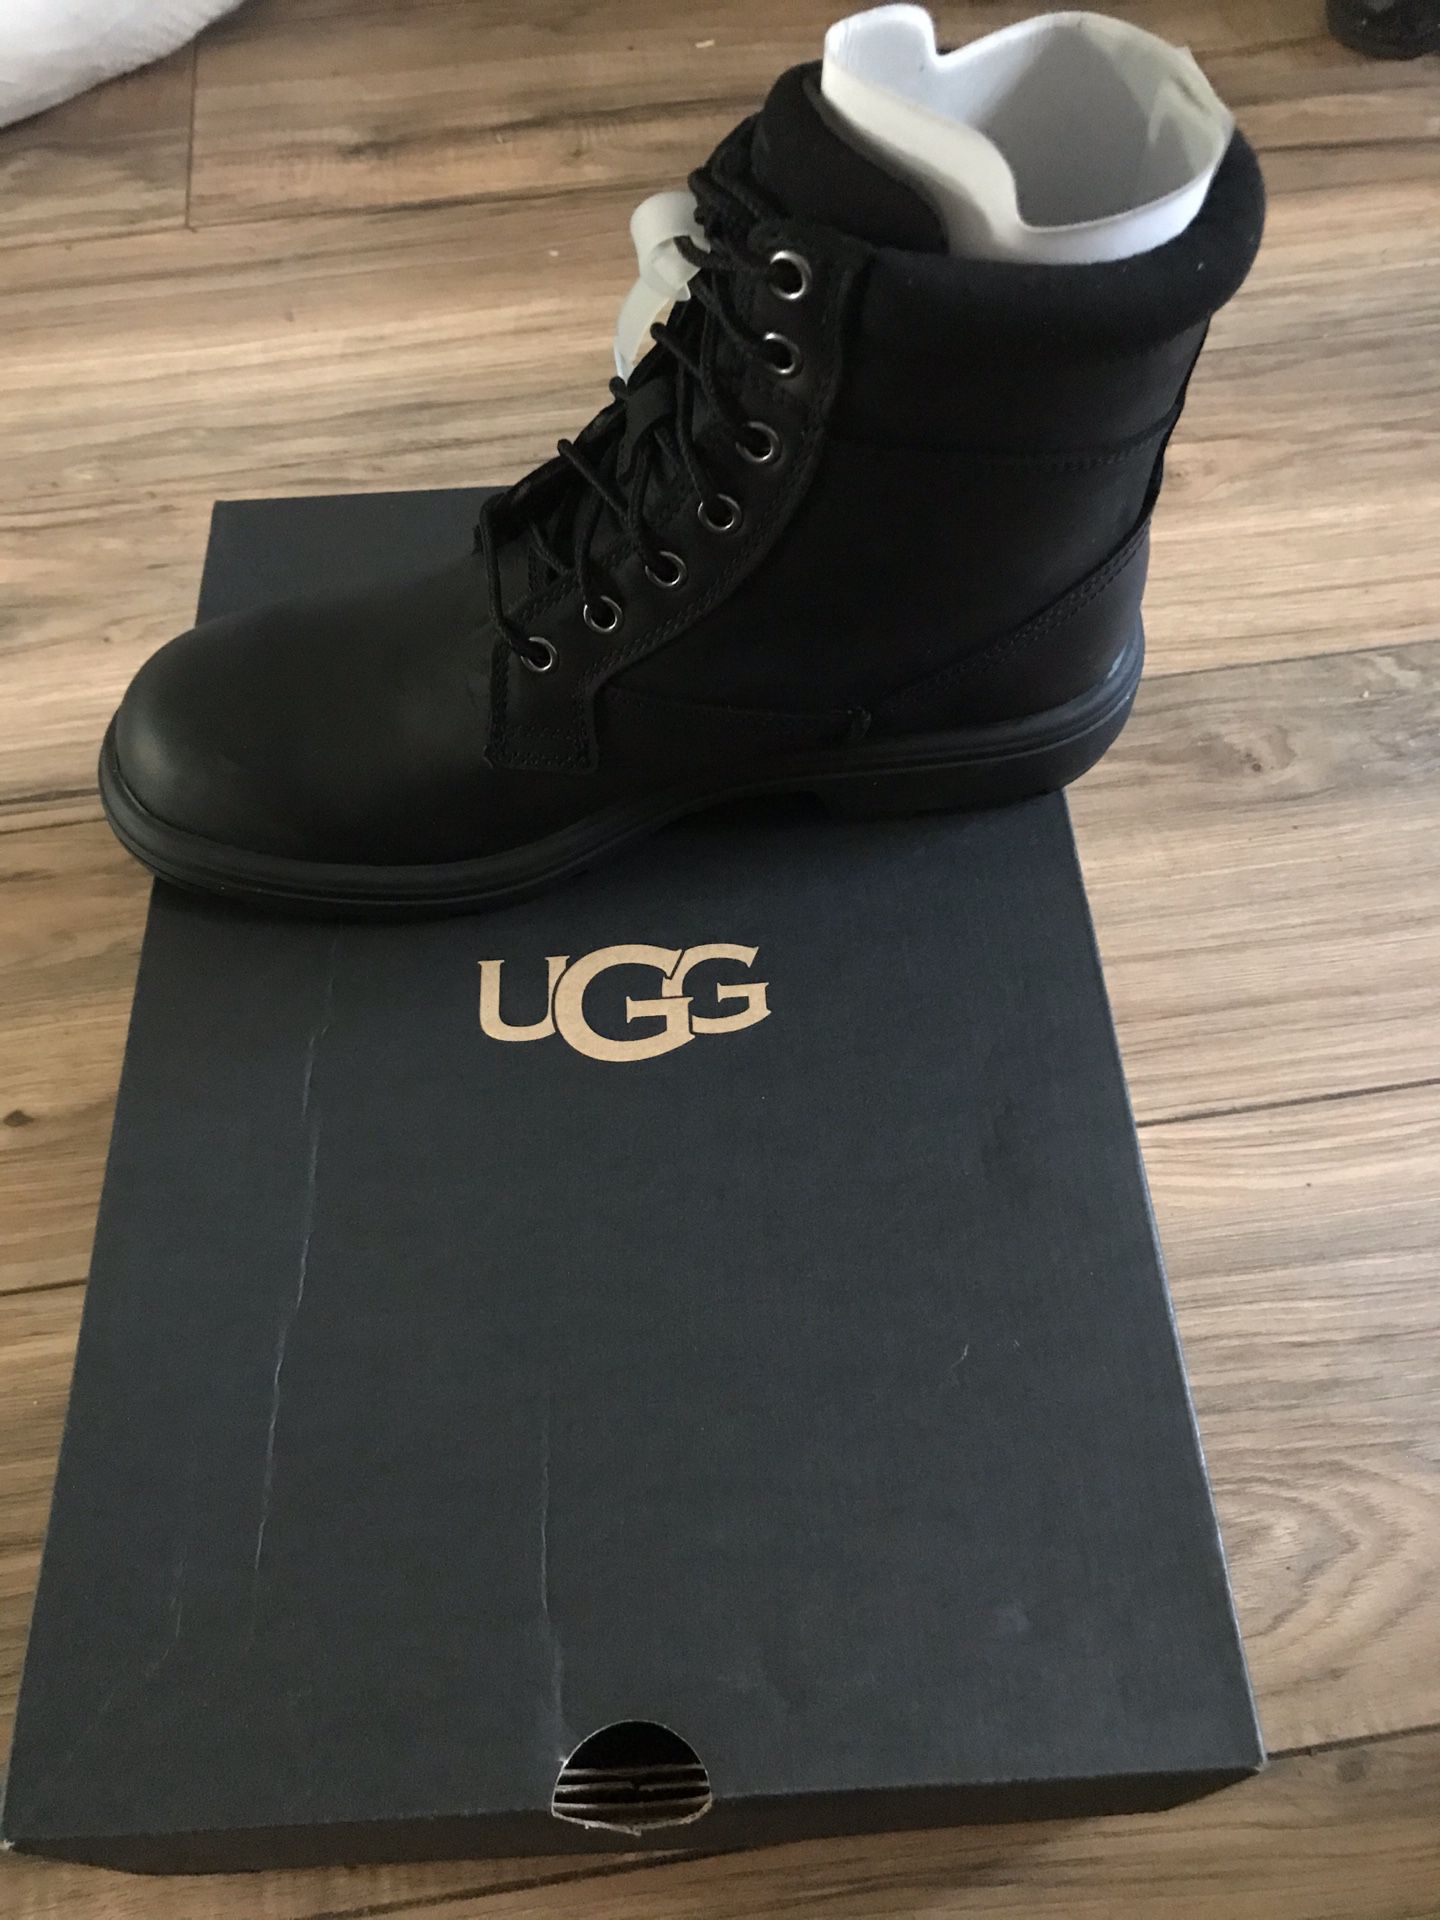 Men ugg boots size 8 black